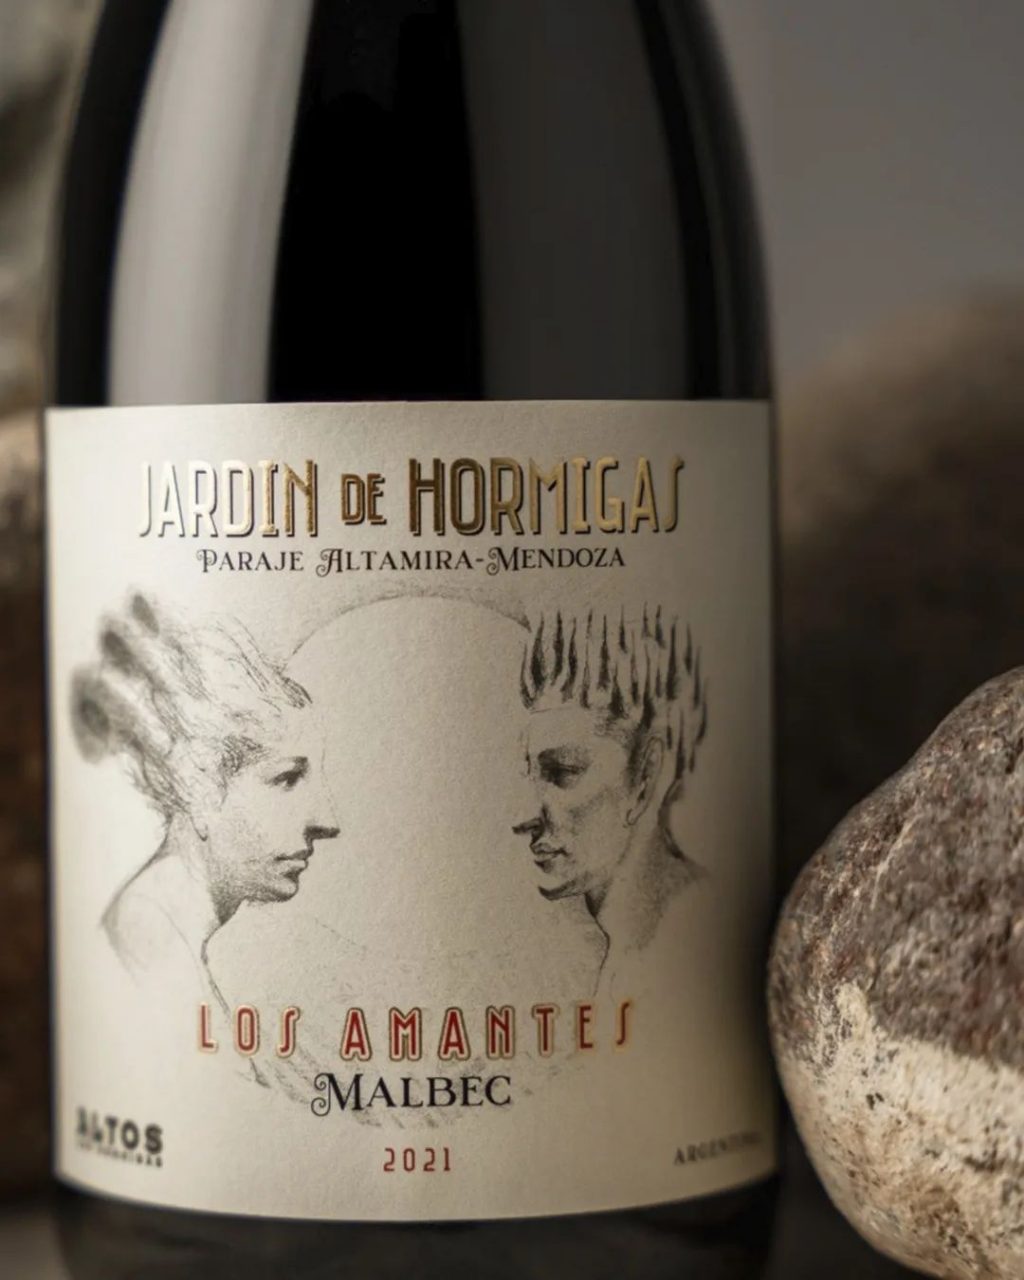 Dos vinos argentinos con puntaje perfecto | El magazine de vinos, gastronomía y lifestyle para las mentes inquietas